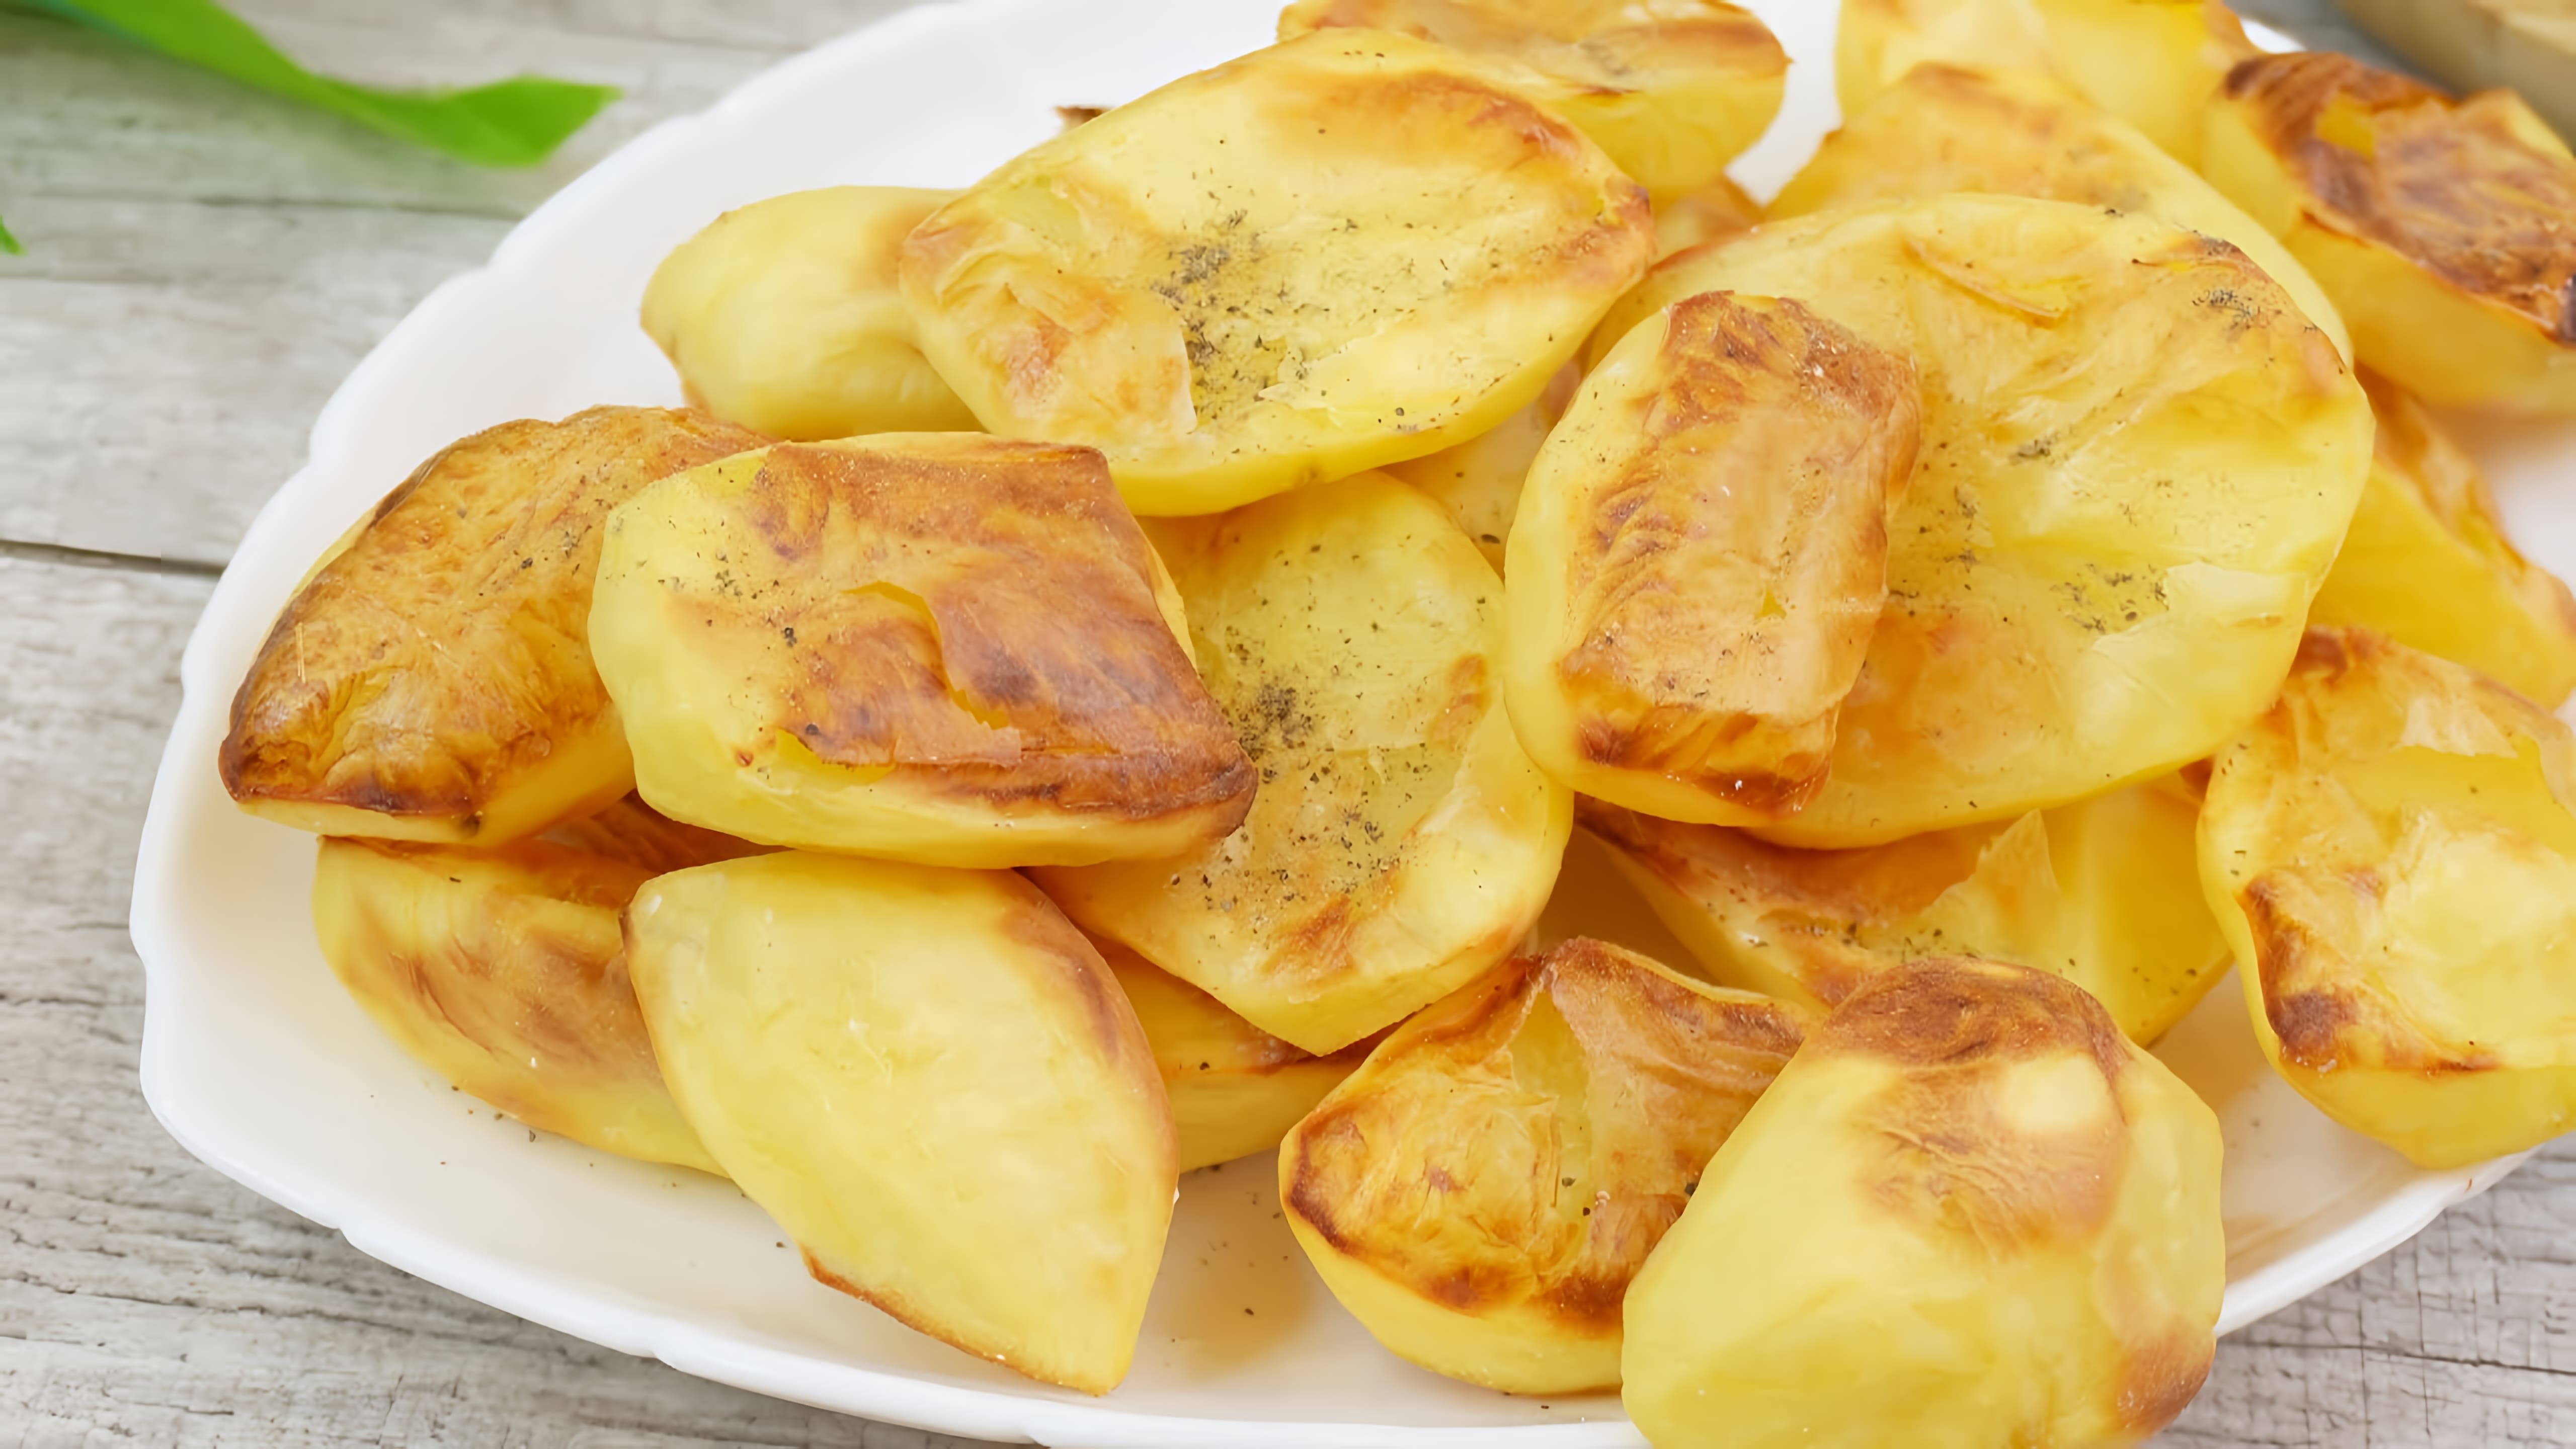 В этом видео представлены три рецепта приготовления картофеля: картофель, запеченный на луковой подушке, праздничный картофель и картофель-пирожочки